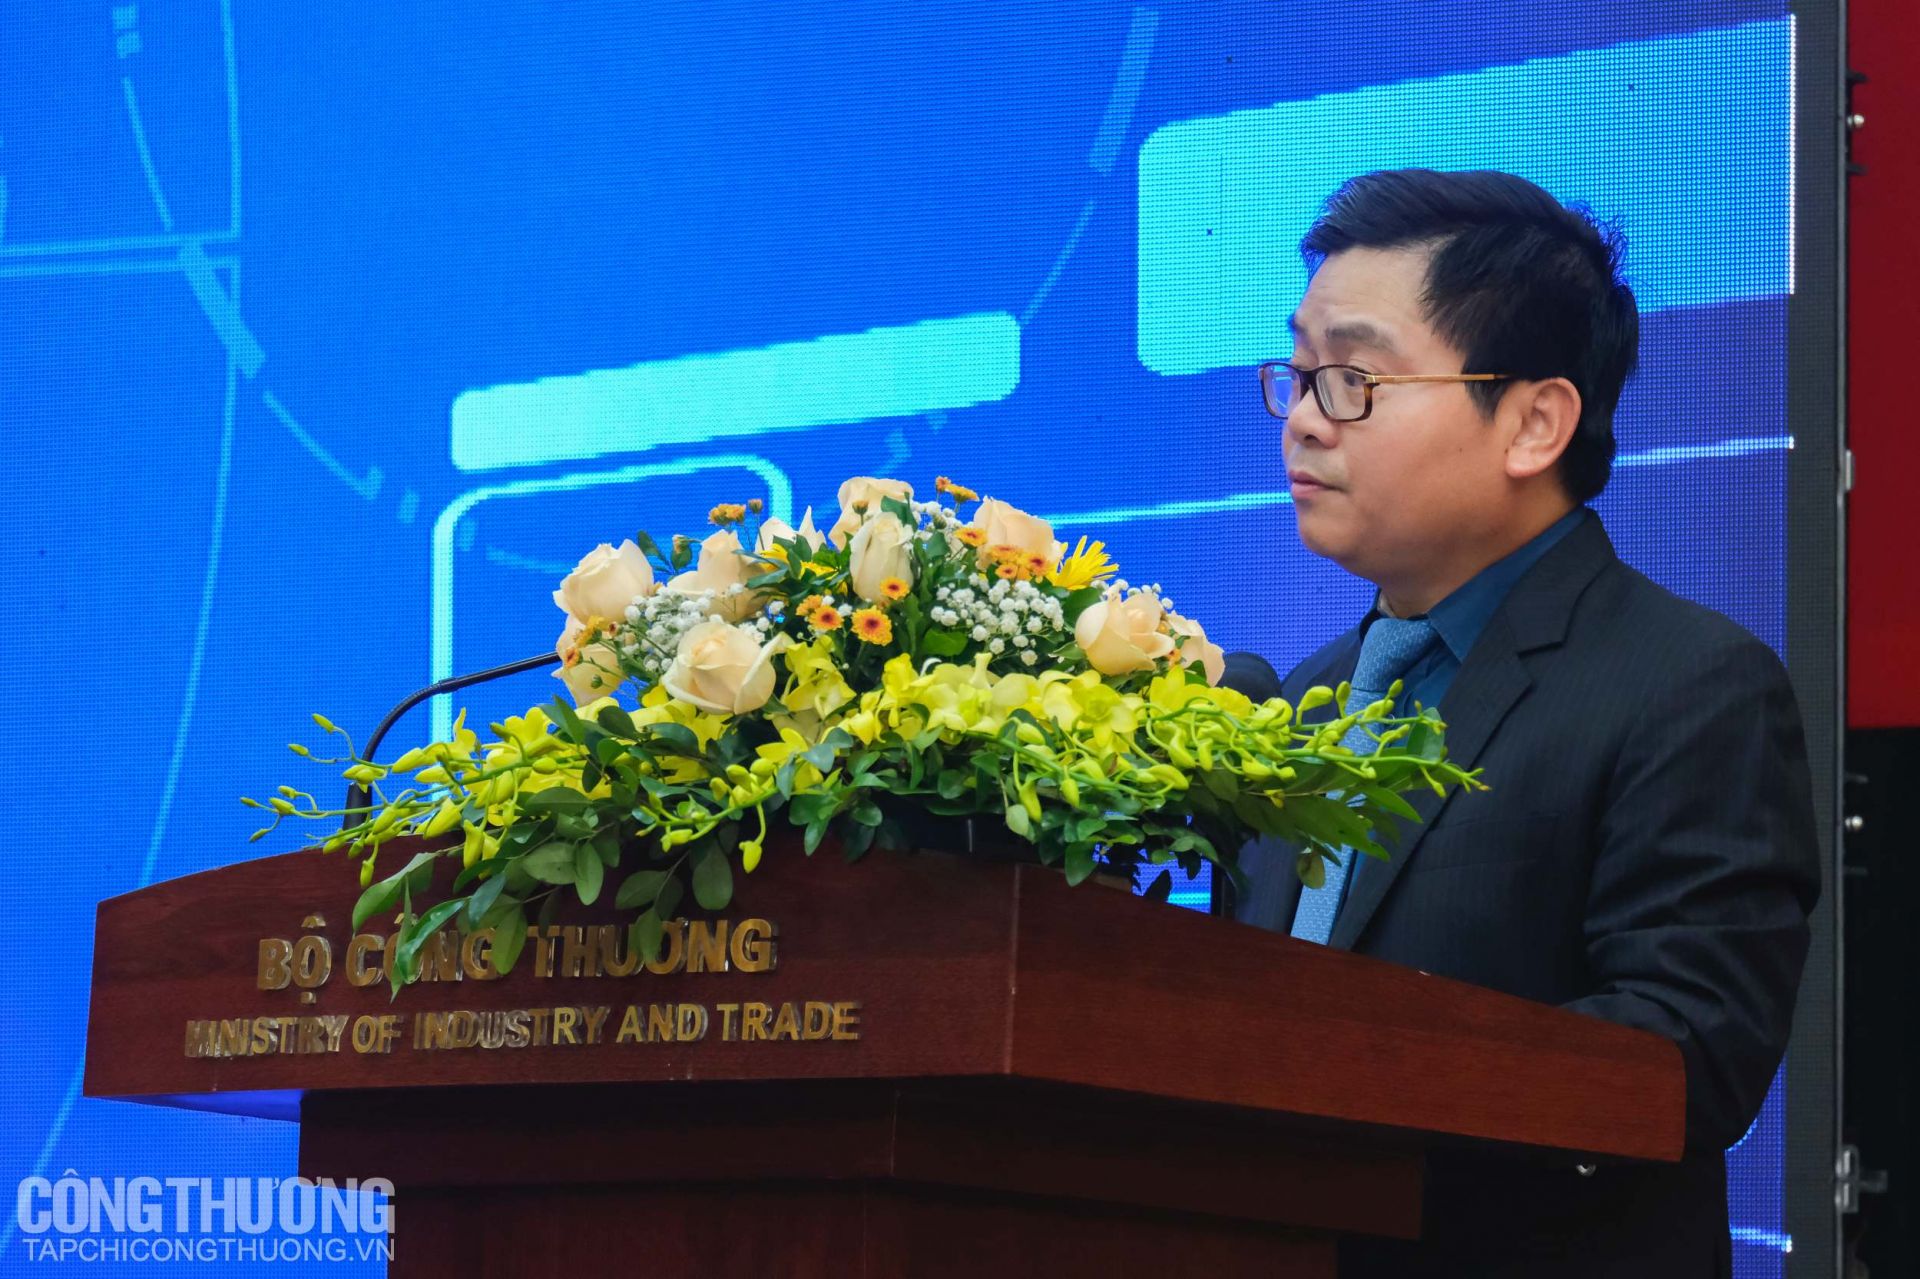 Cục trưởng Cục Công nghiệp Trương Thanh Hoài